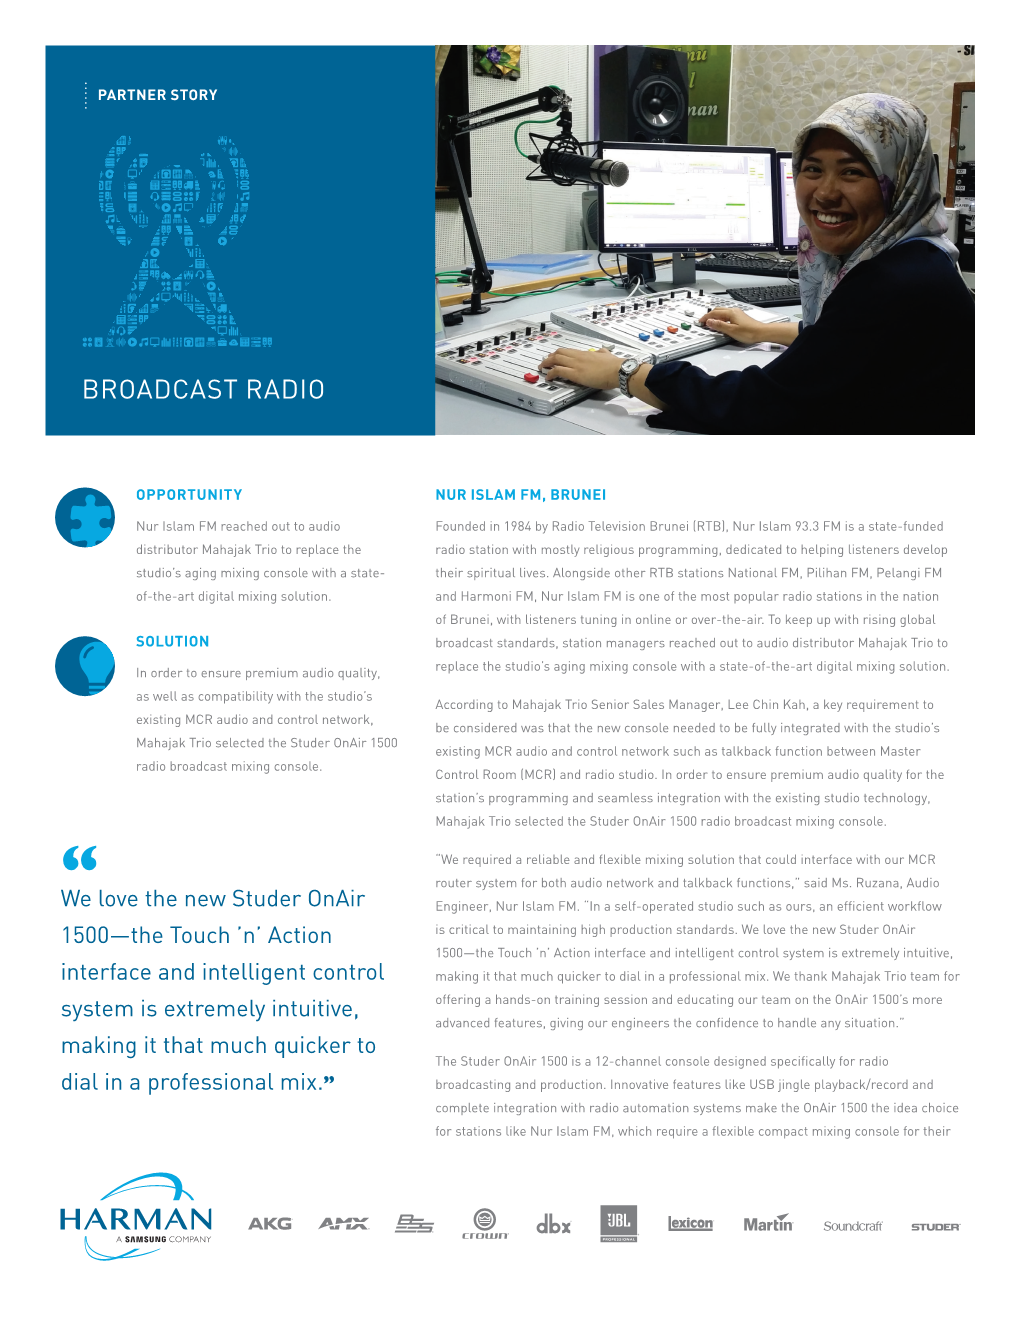 Broadcast Radio